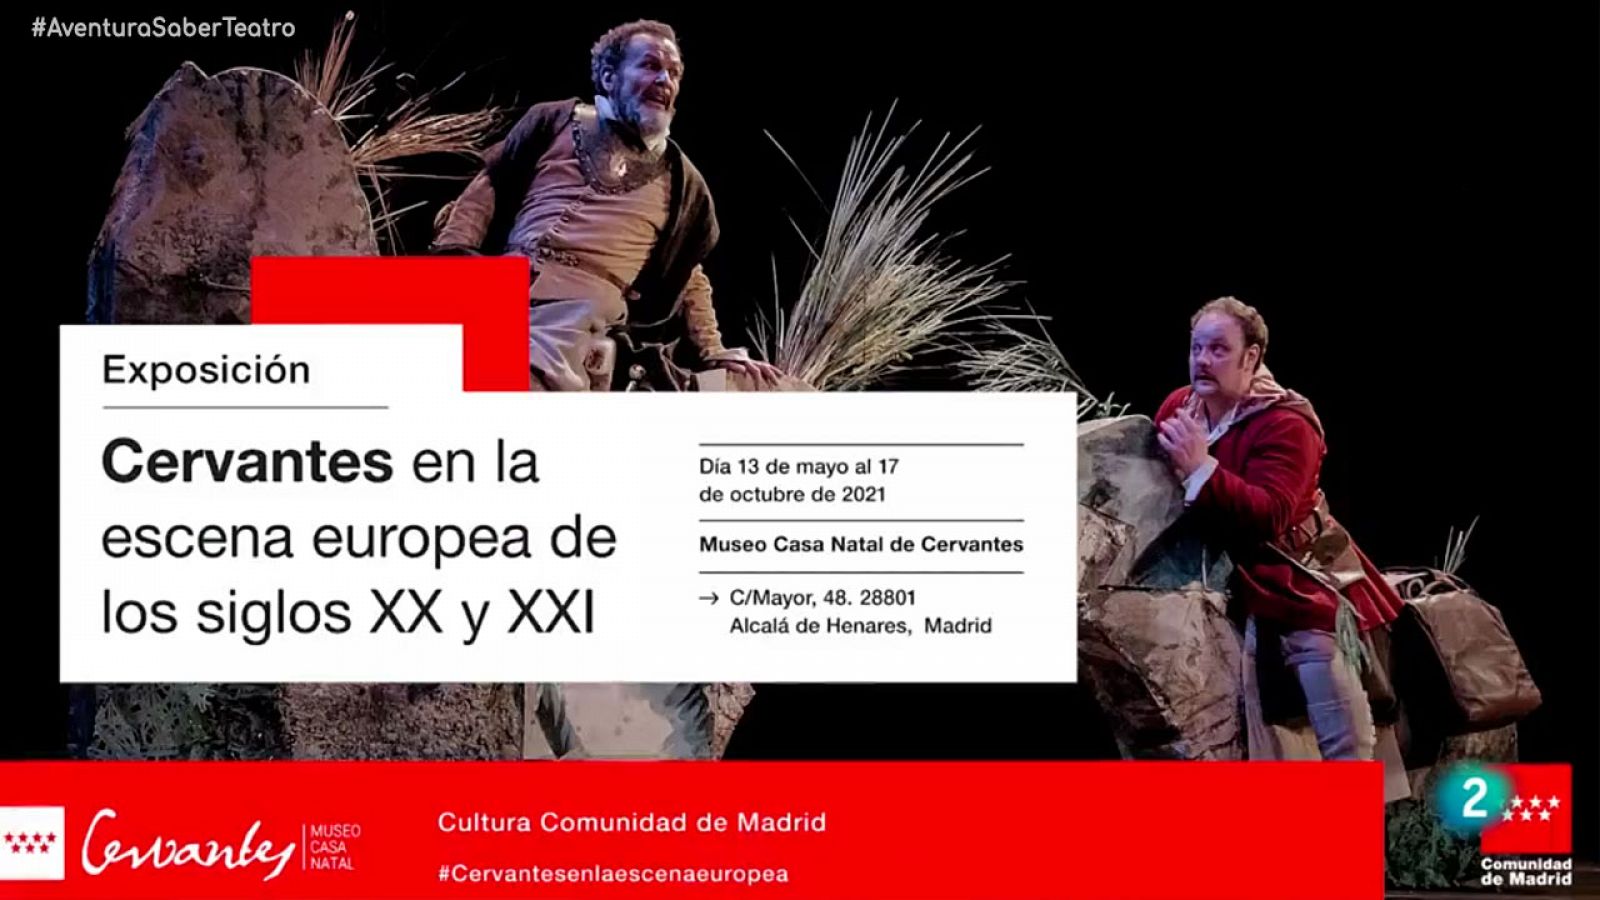 La aventura del saber - Cervantes en la escena europea en los siglos XX y XXI